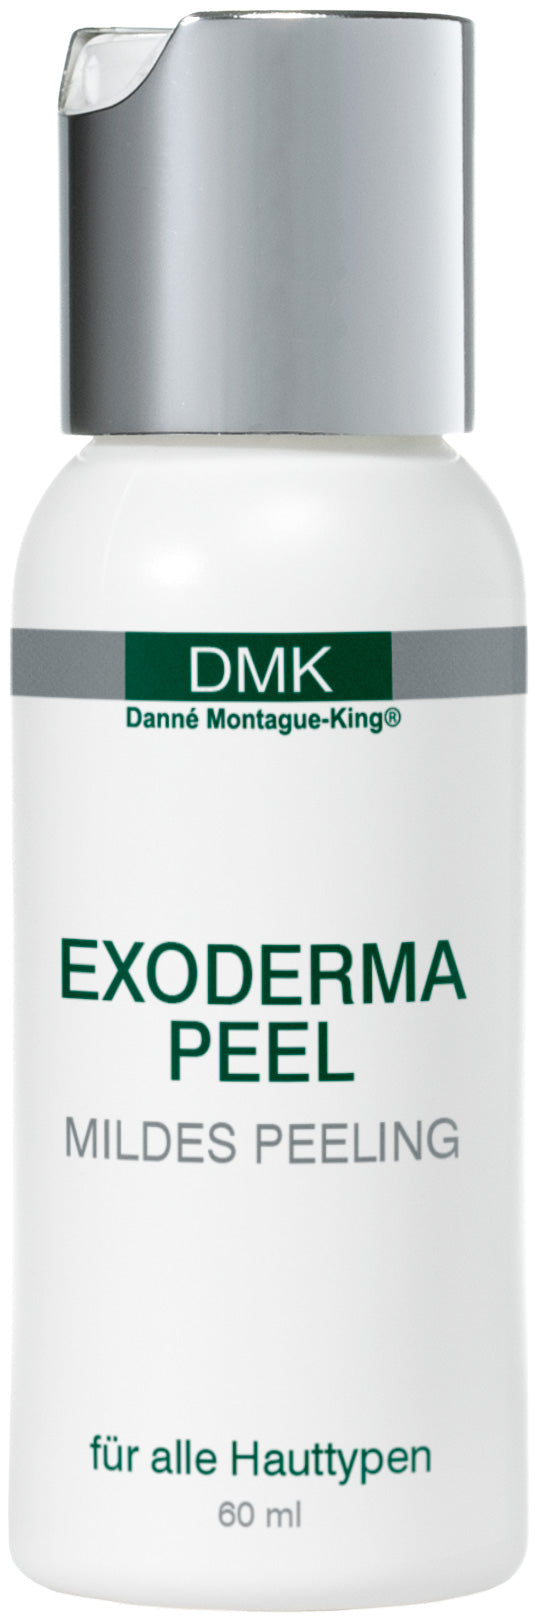 DMK - Exoderma Peel